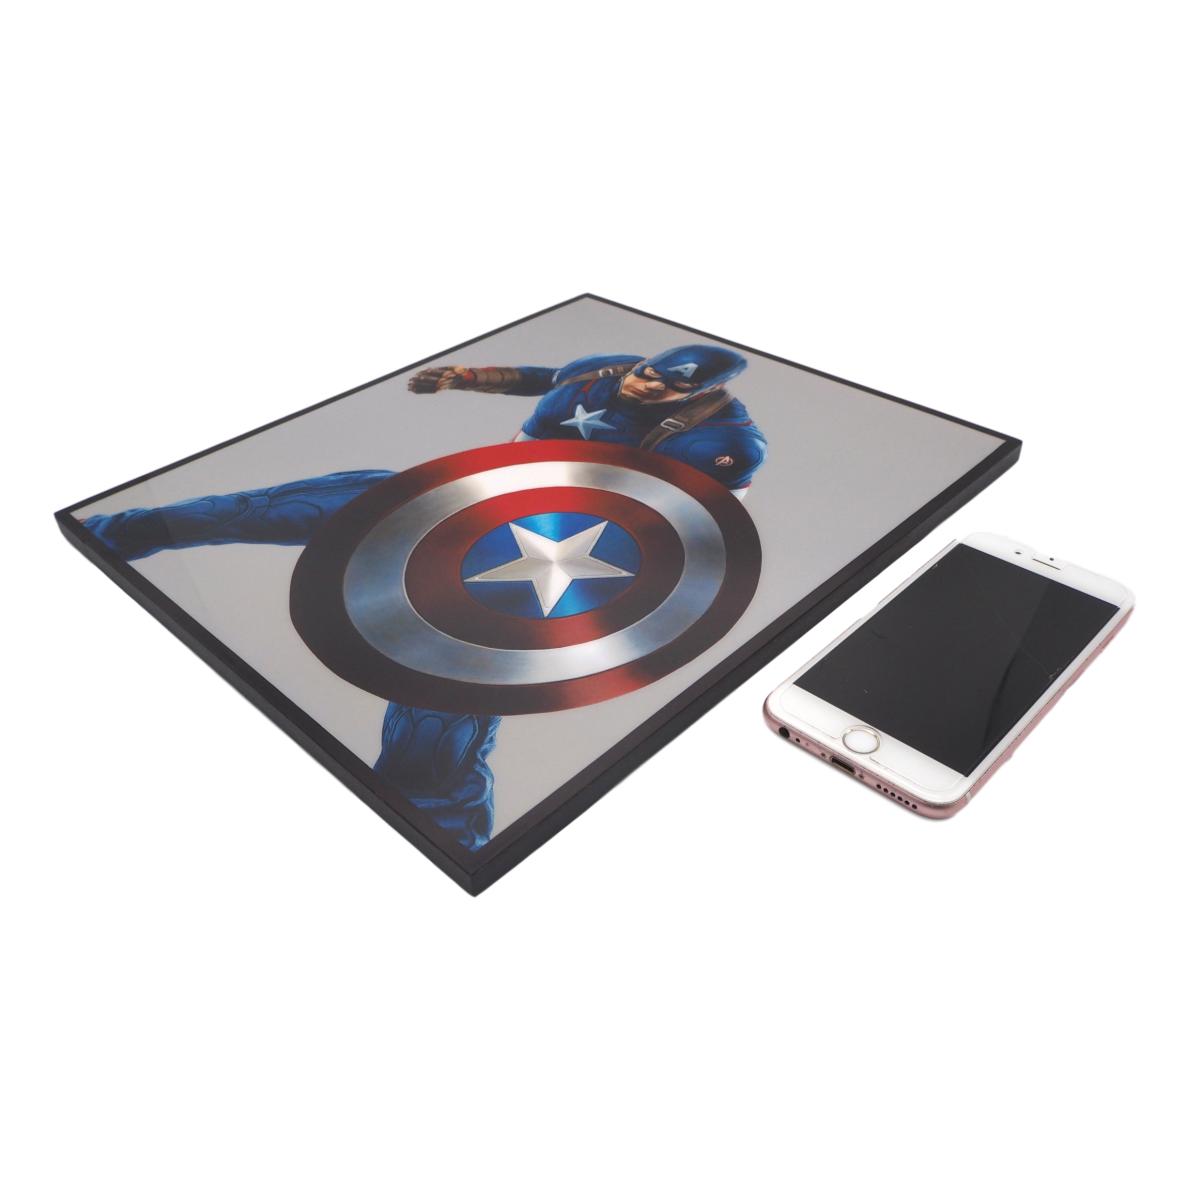 楽天市場 送料無料 キャプテン アメリカ 2 Captain America アートパネル 壁掛け 据え置き 壁掛けフック付き アーティスト Popパネル インテリア アートフレーム ポスター Cool クール 面白い かっこいい アート 雑貨 カフェ リビング 額付き 額縁 オシャレ